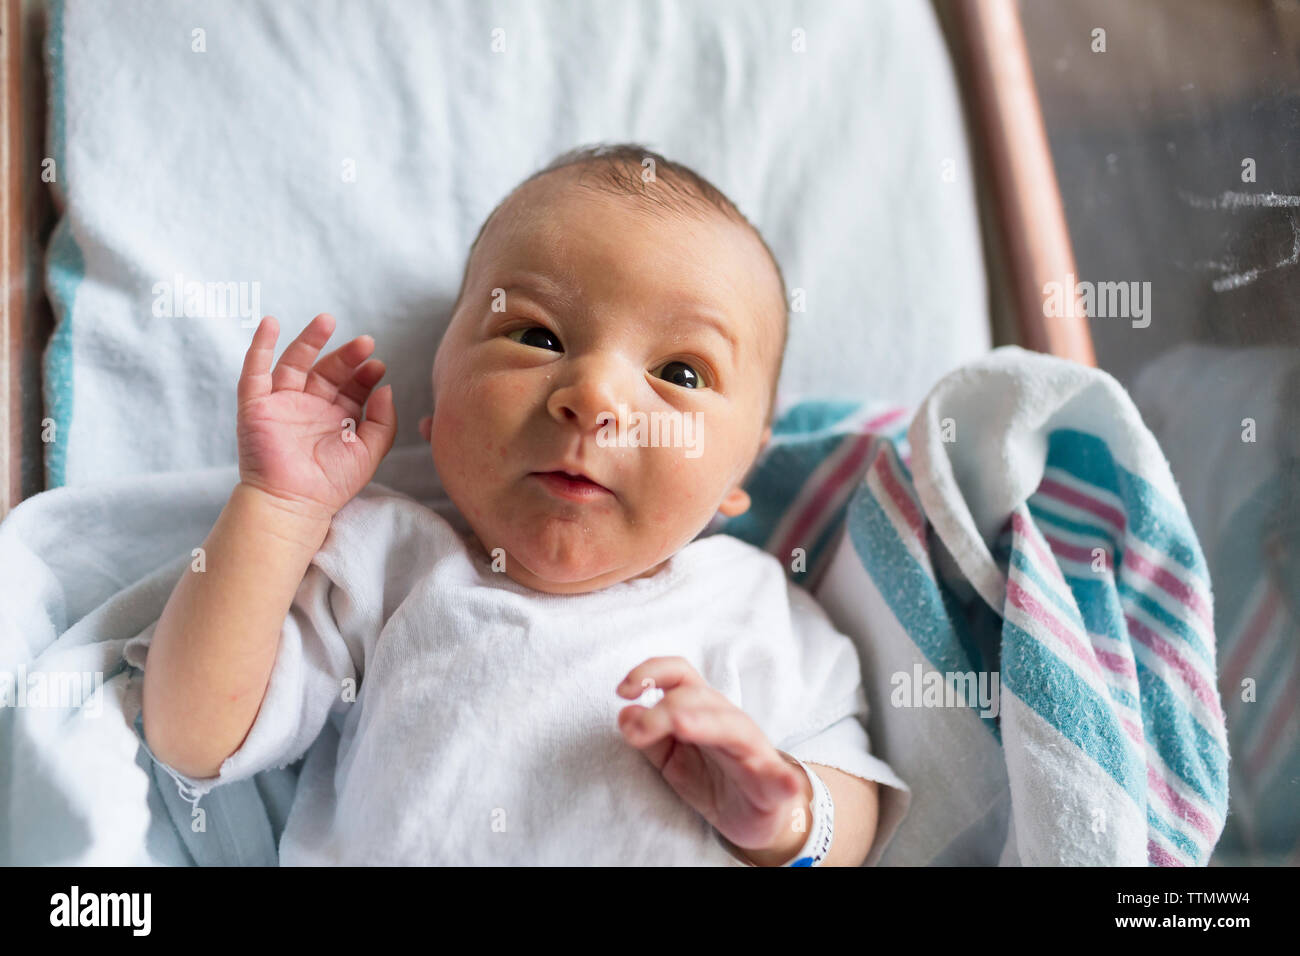 Neugeborenes Baby im Krankenhaus Wiege auf Rosa und Blaue Decke Stockfoto